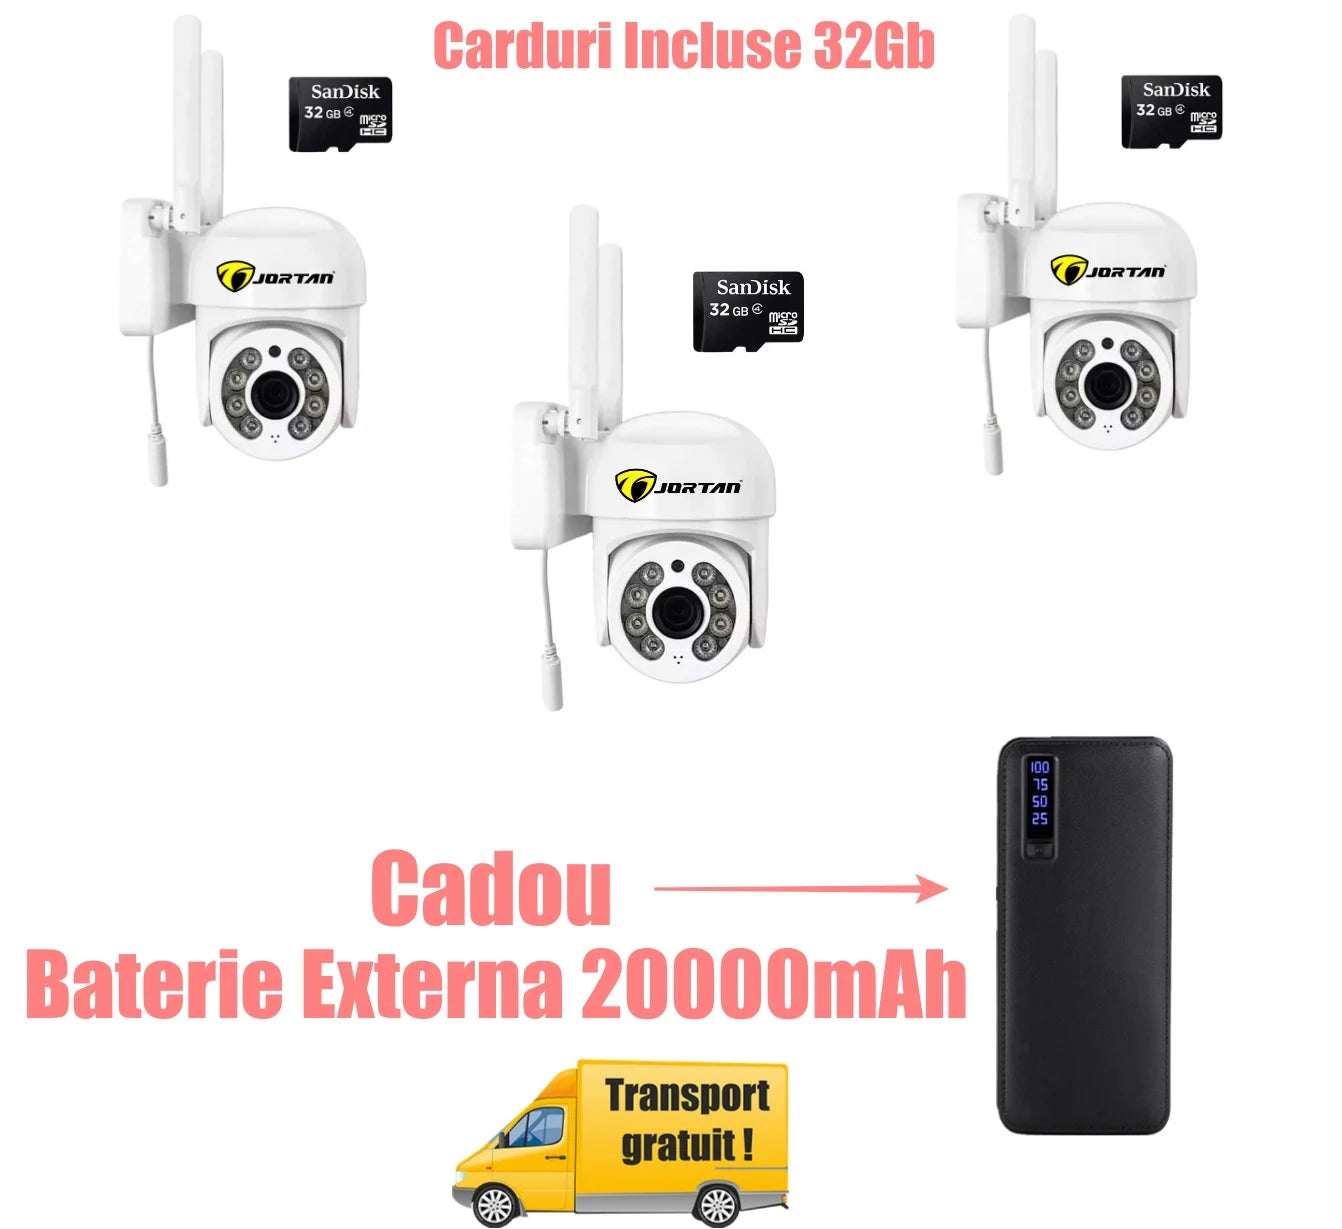 Oferta Verii ! 3 X Camera De Supraveghere Jortan Wifi + 3 Carduri 32GB + Cadou Baterie Externa